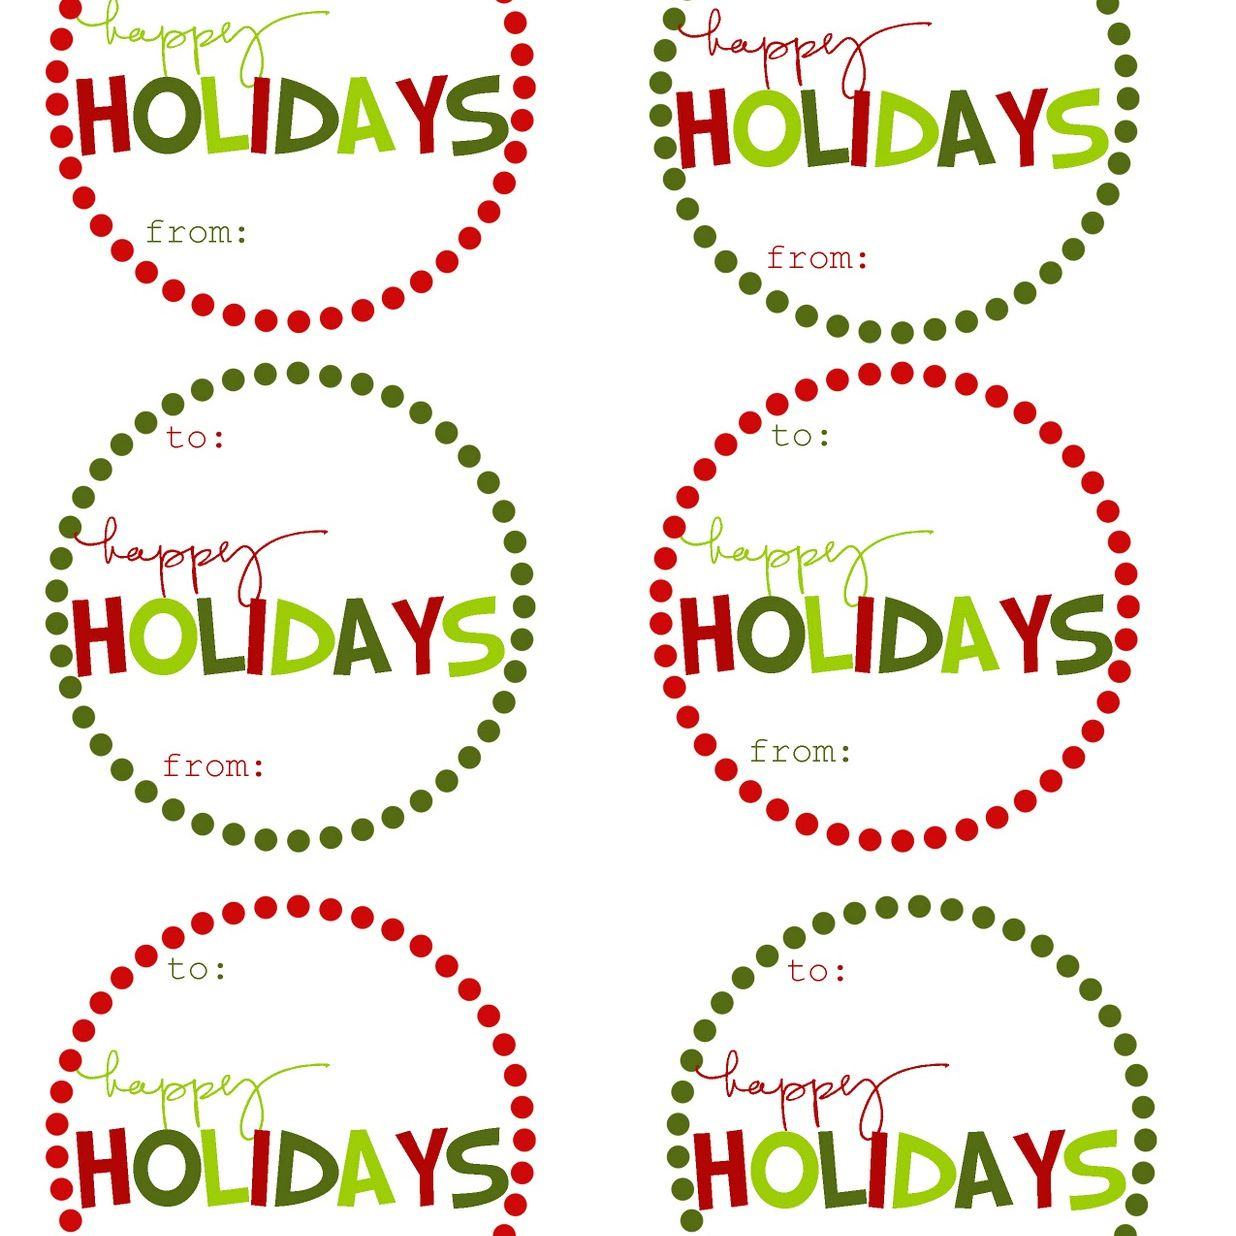 40 Sets Of Free Printable Christmas Gift Tags - Free Printable Gift Tags Personalized